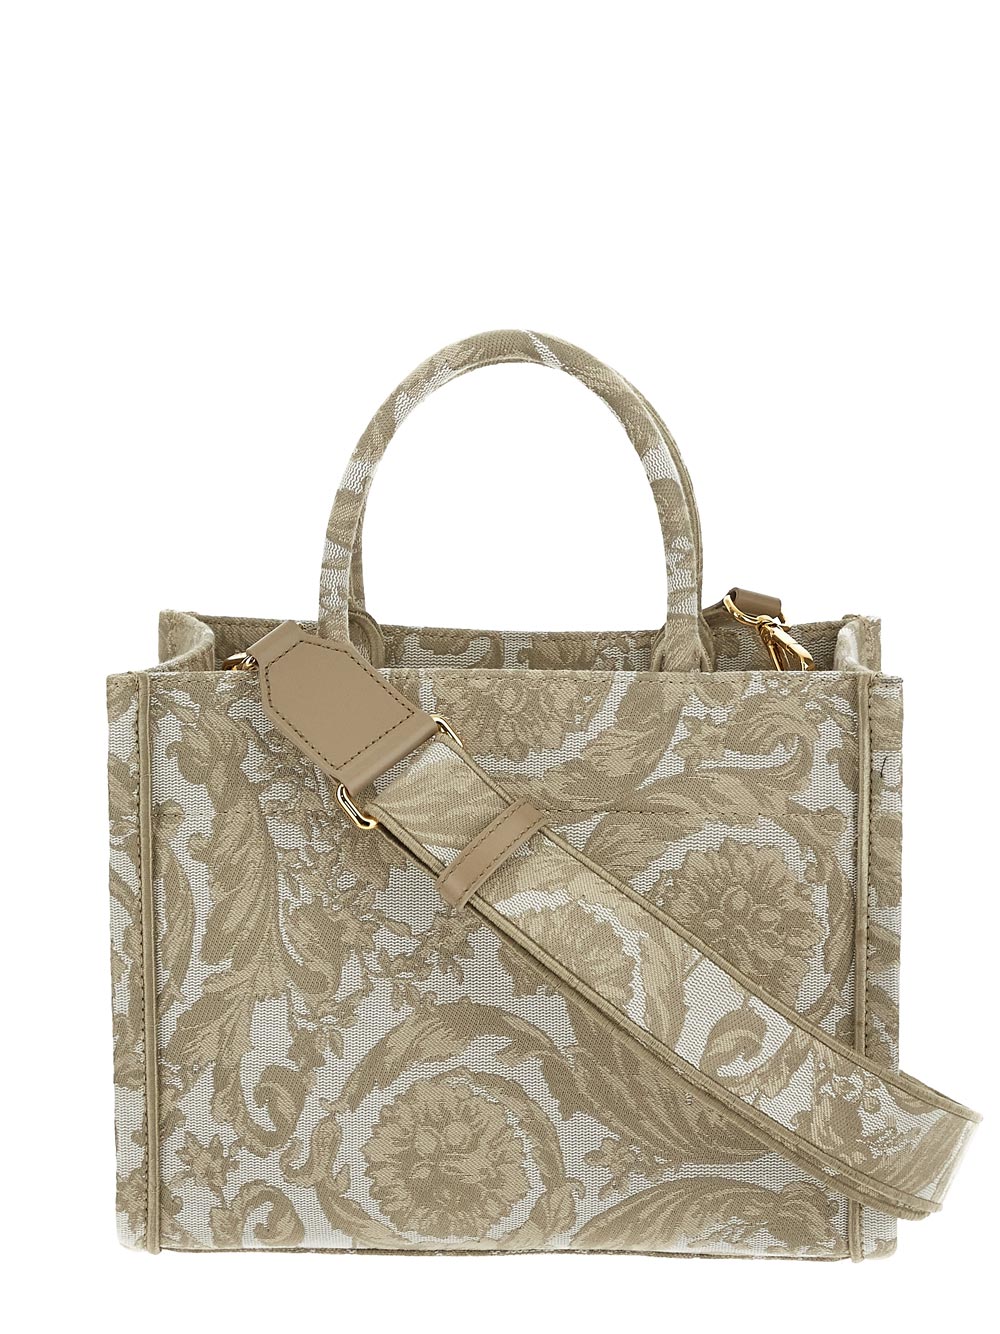 Versace Barocco Athena Small Tote Bag